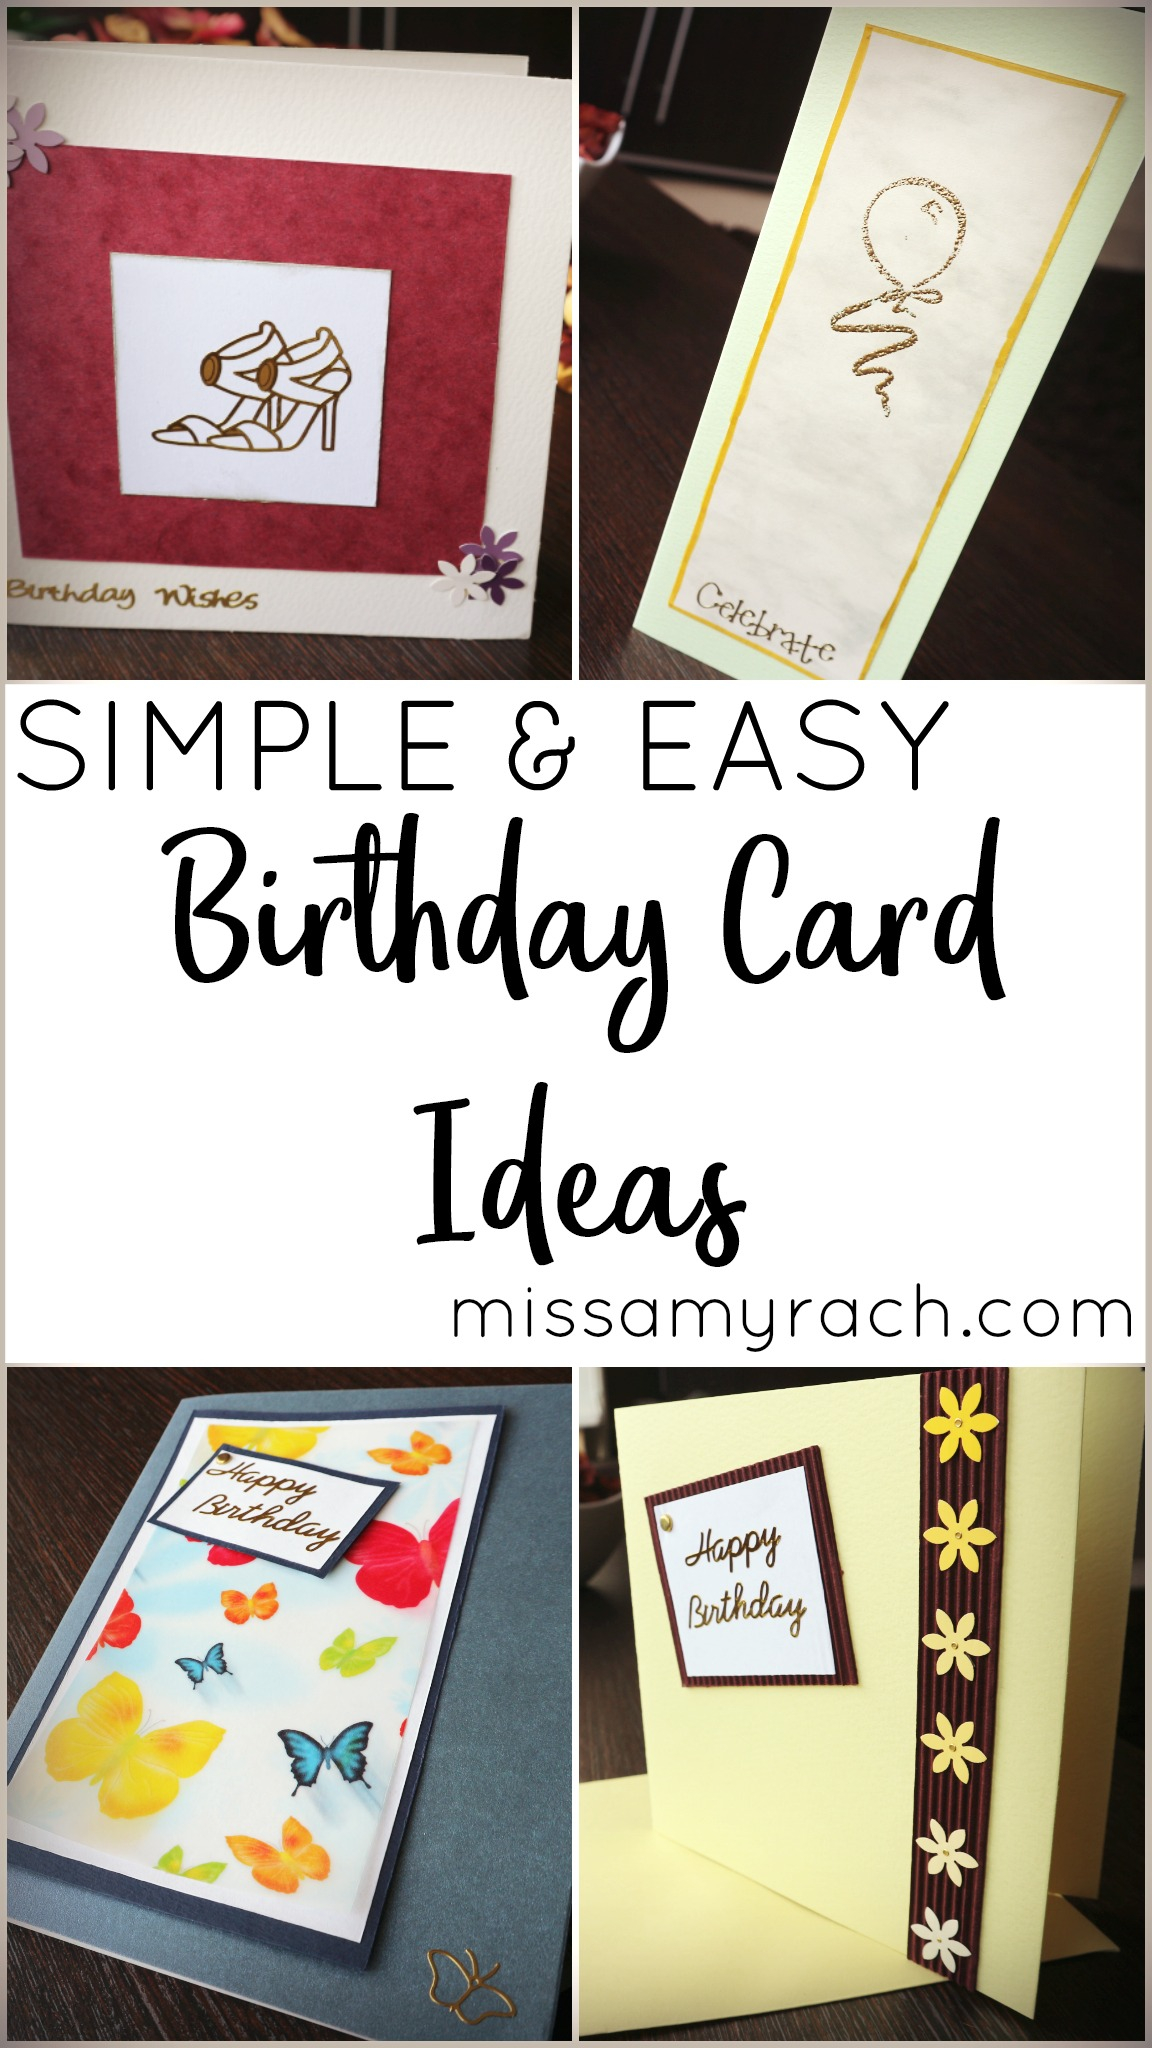 Easy Birthday Card Ideas Simple And Easy Birthday Card Ideas Miss Amy Rach